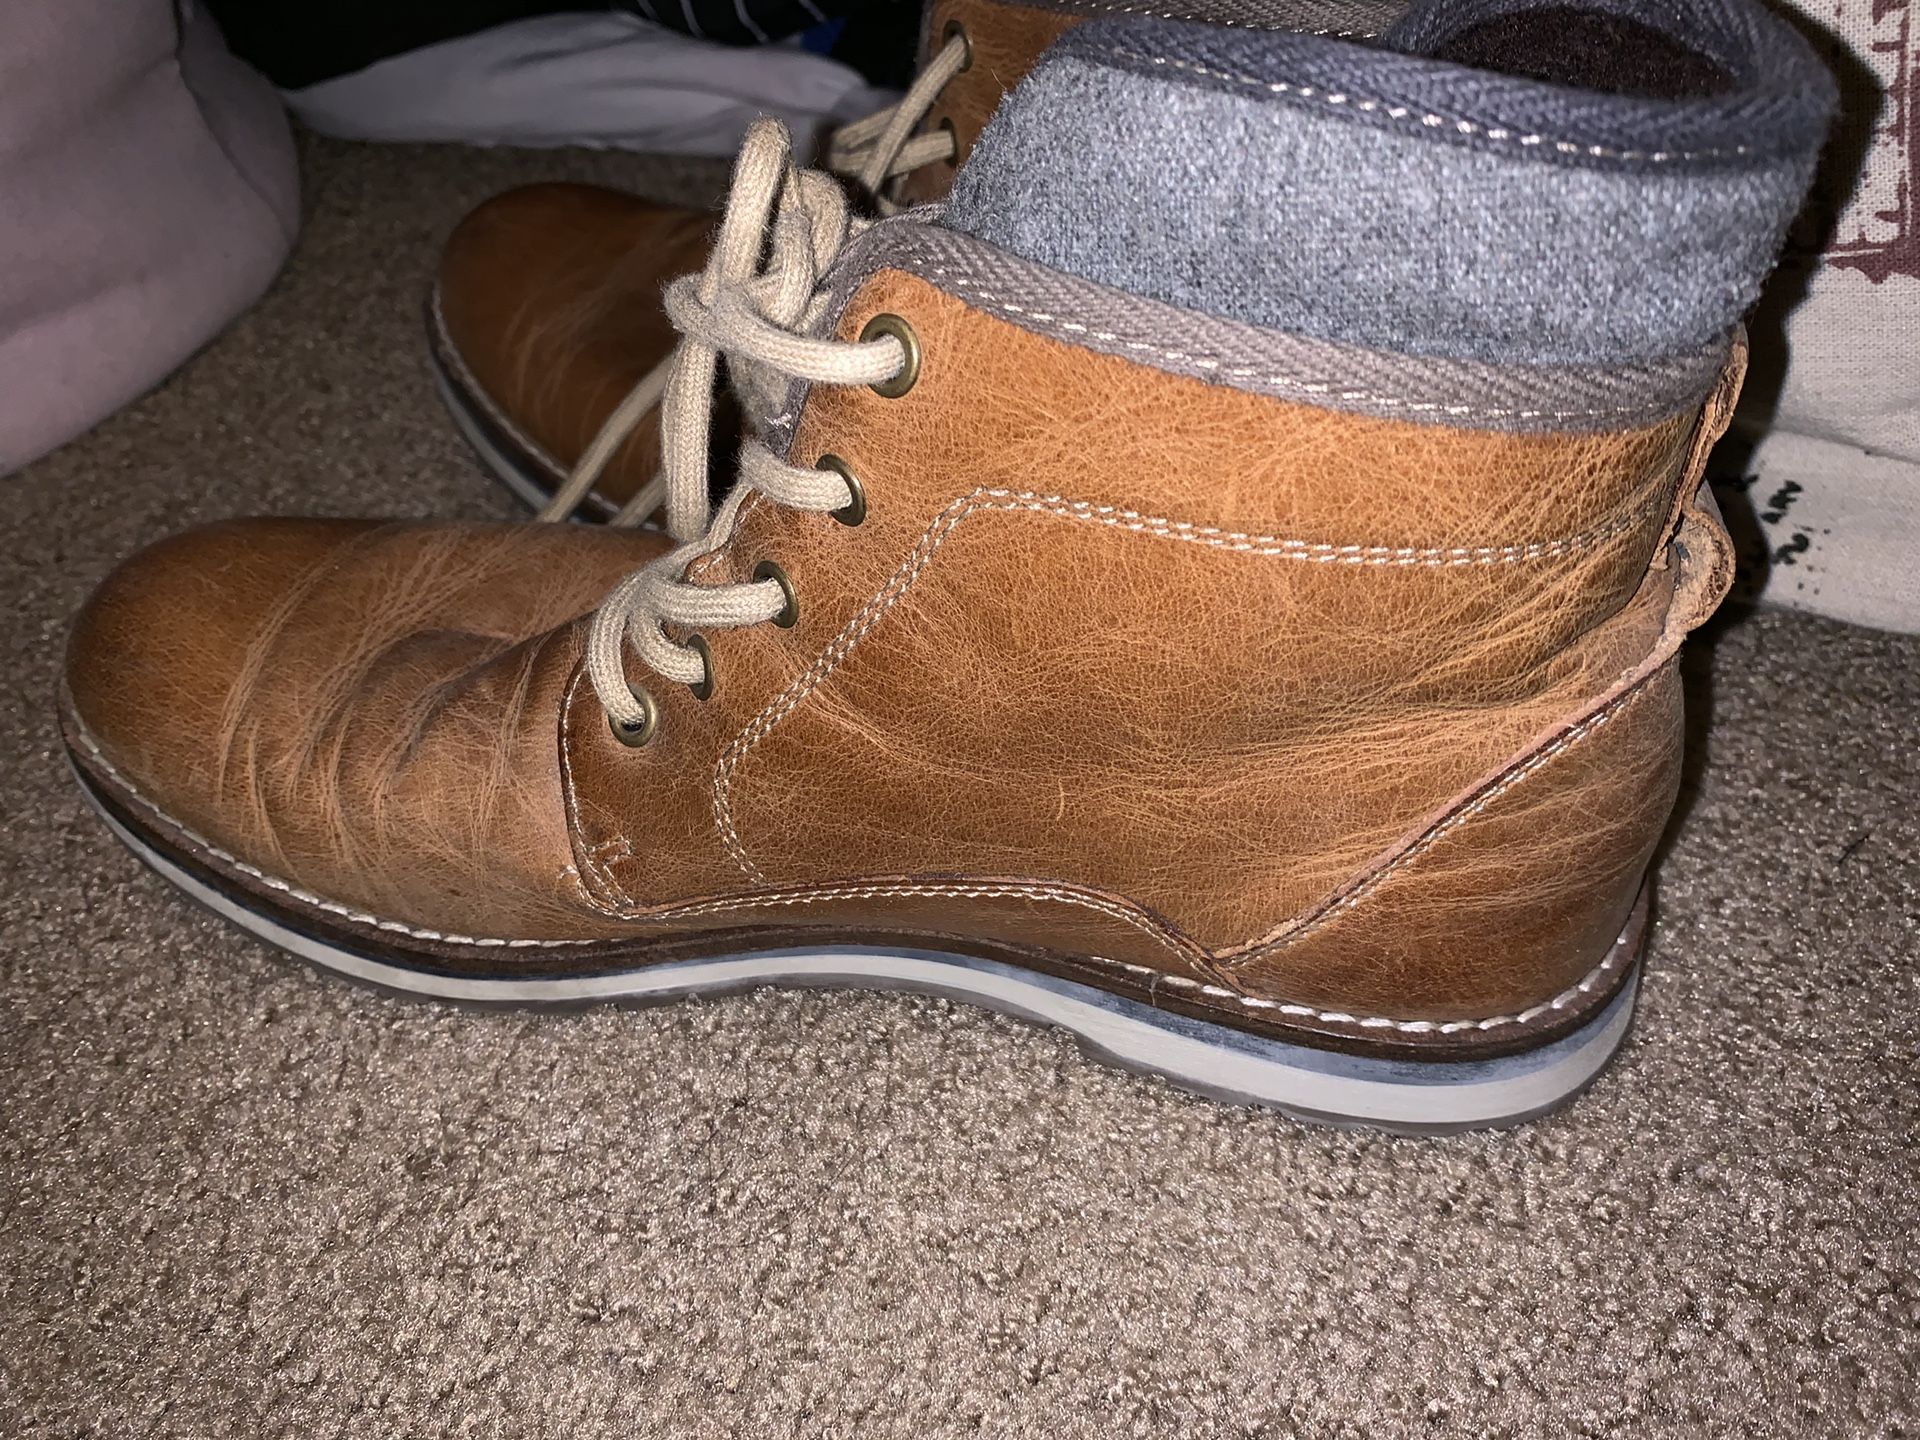 Aldo lather men boots size 11